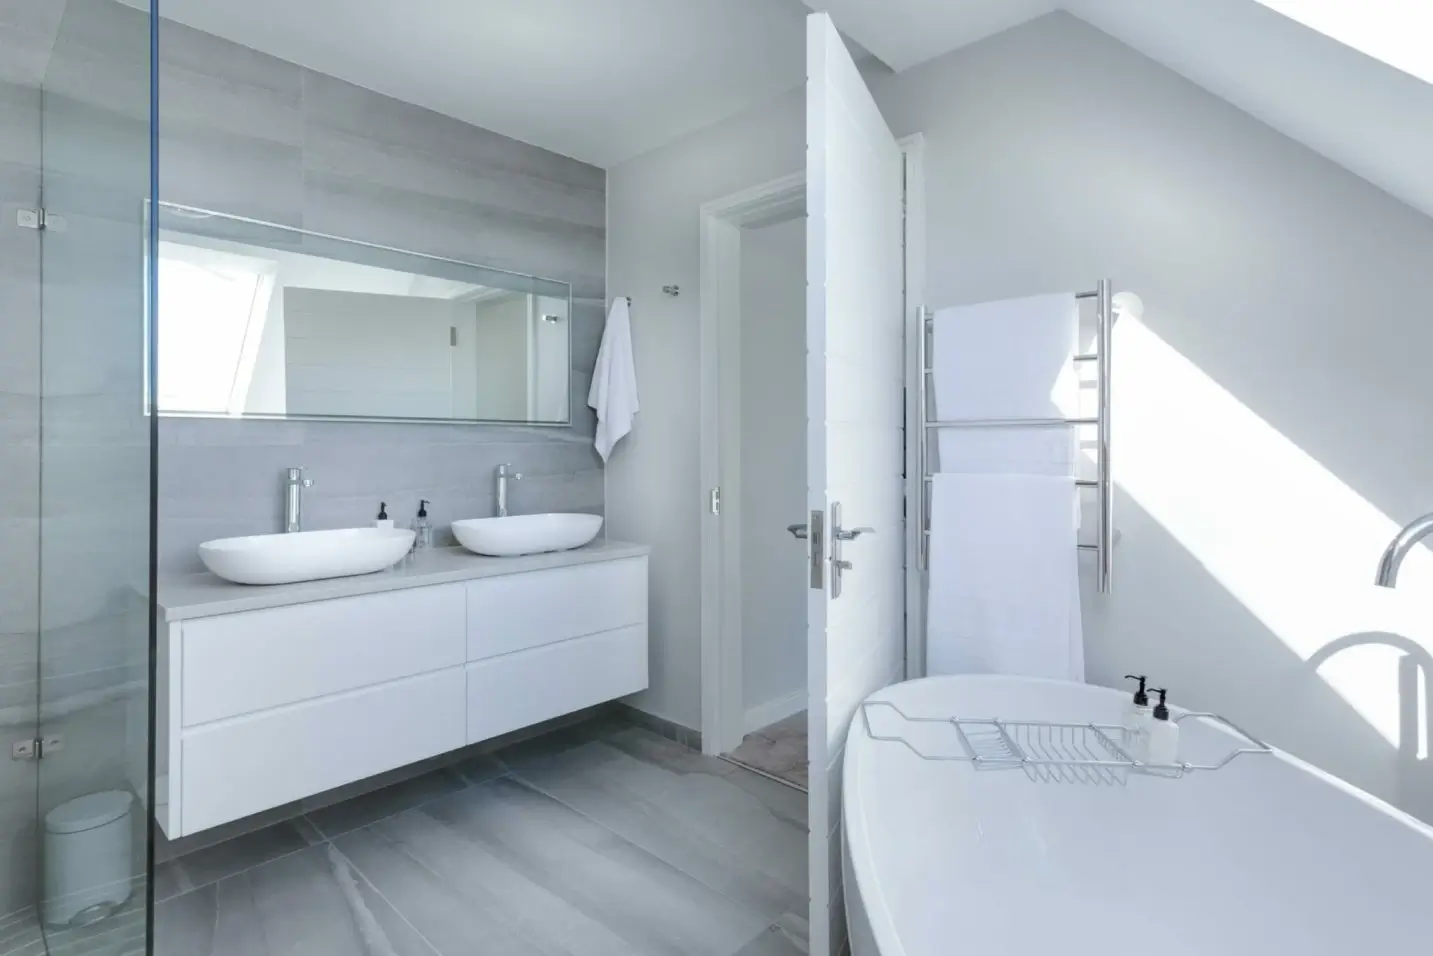 Renovera badrum med en snygg badrumsrenovering vit färg